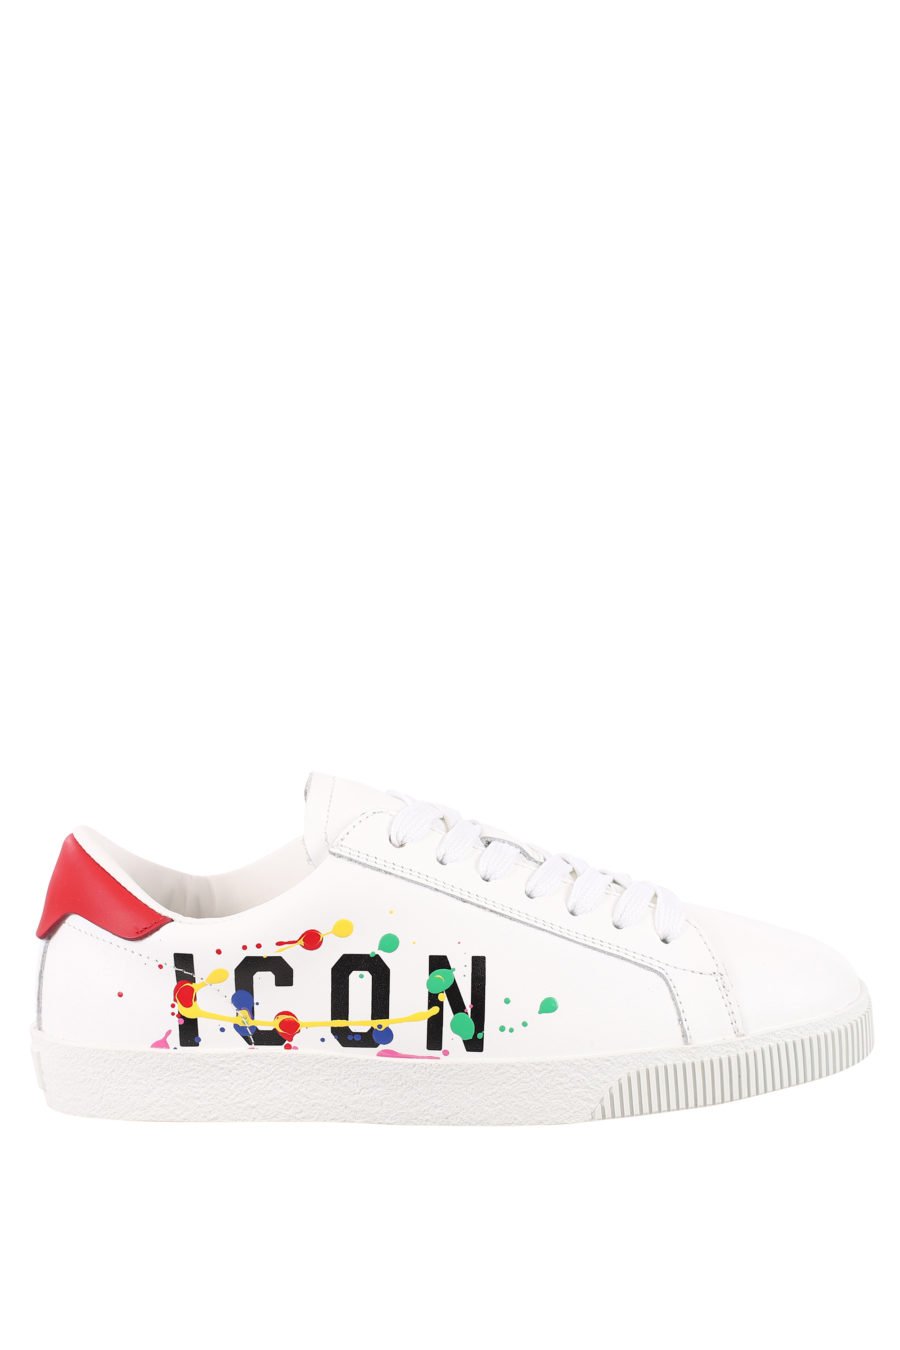 Zapatillas blancas con logo "icon splash" - IMG 0706